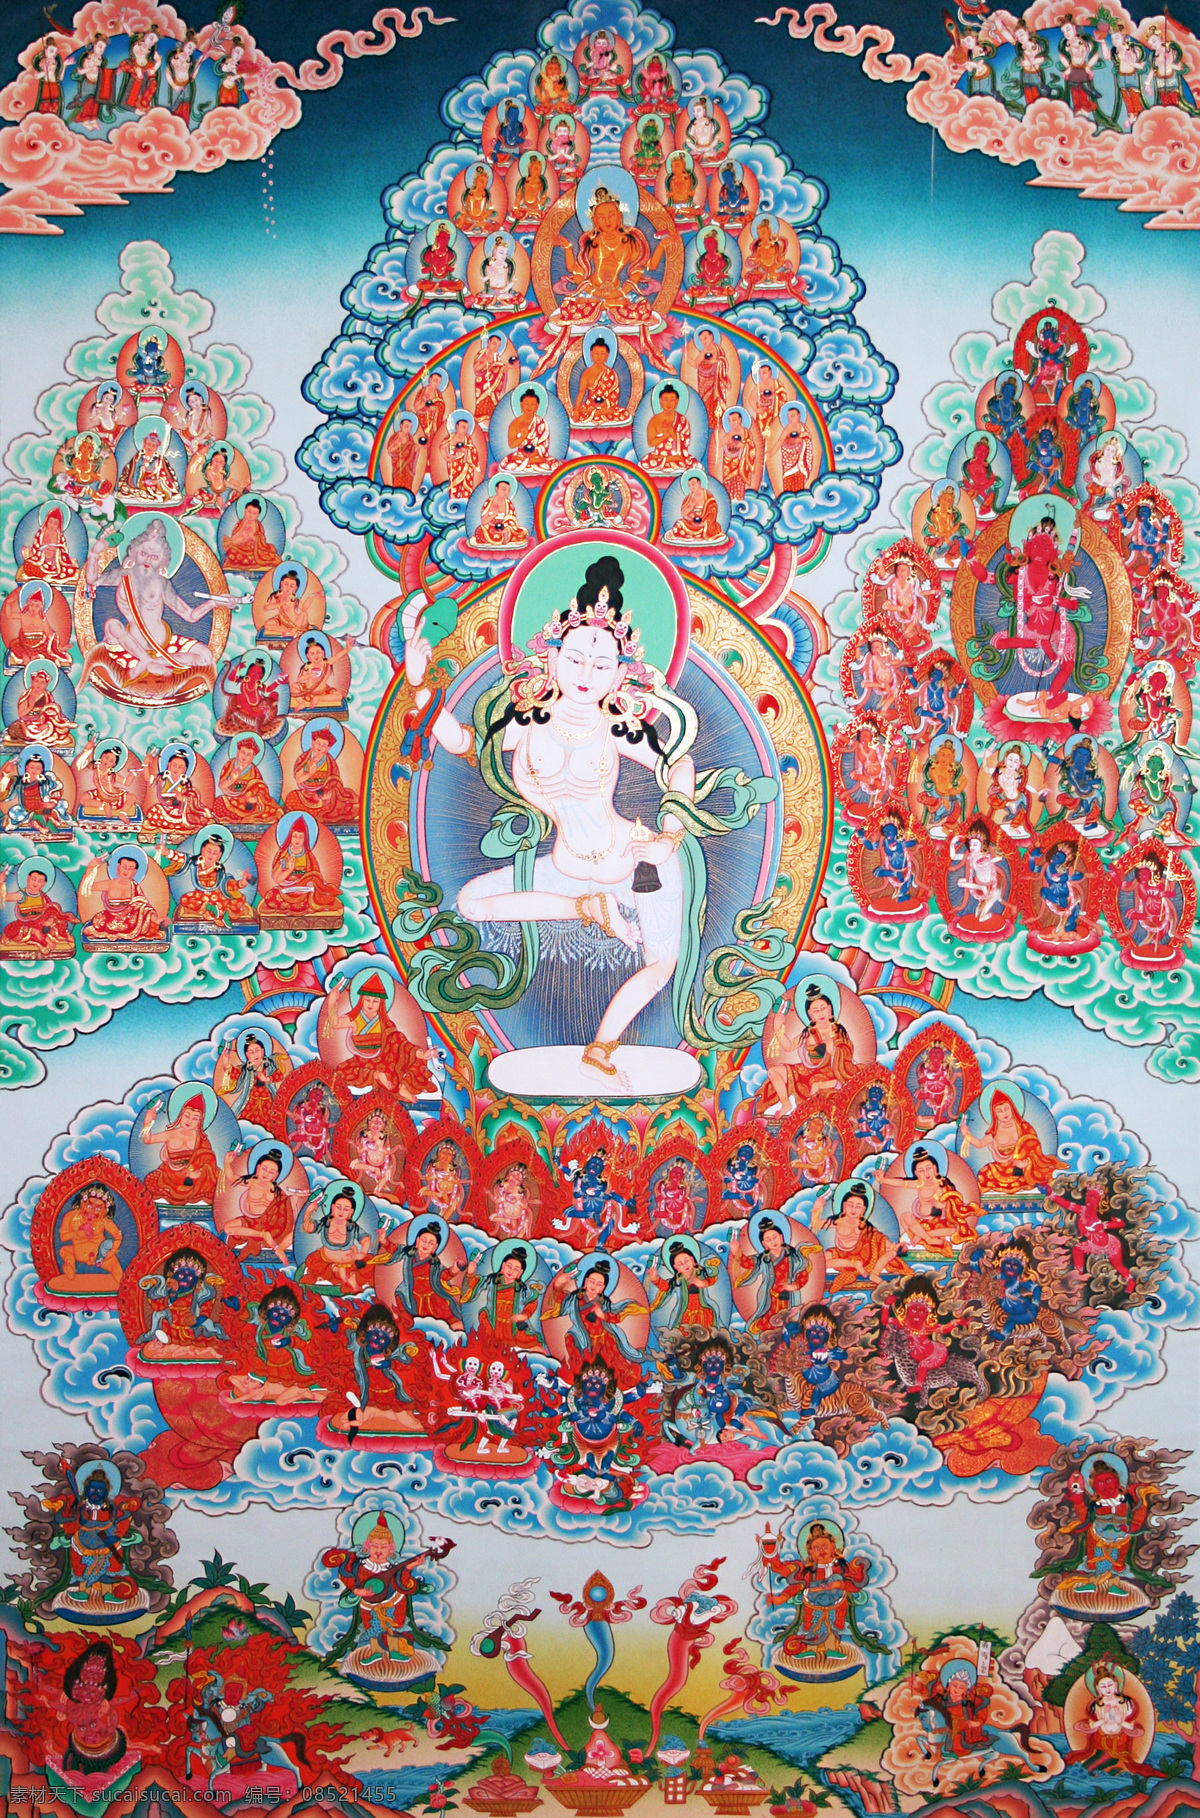 成就 传承 佛 佛教 菩萨 唐卡 文化艺术 瑜伽 母 设计素材 母模 板 瑜伽母 老唐卡 西藏 藏传 密宗 法器 成就者 大德 喇嘛 活佛 宗教信仰